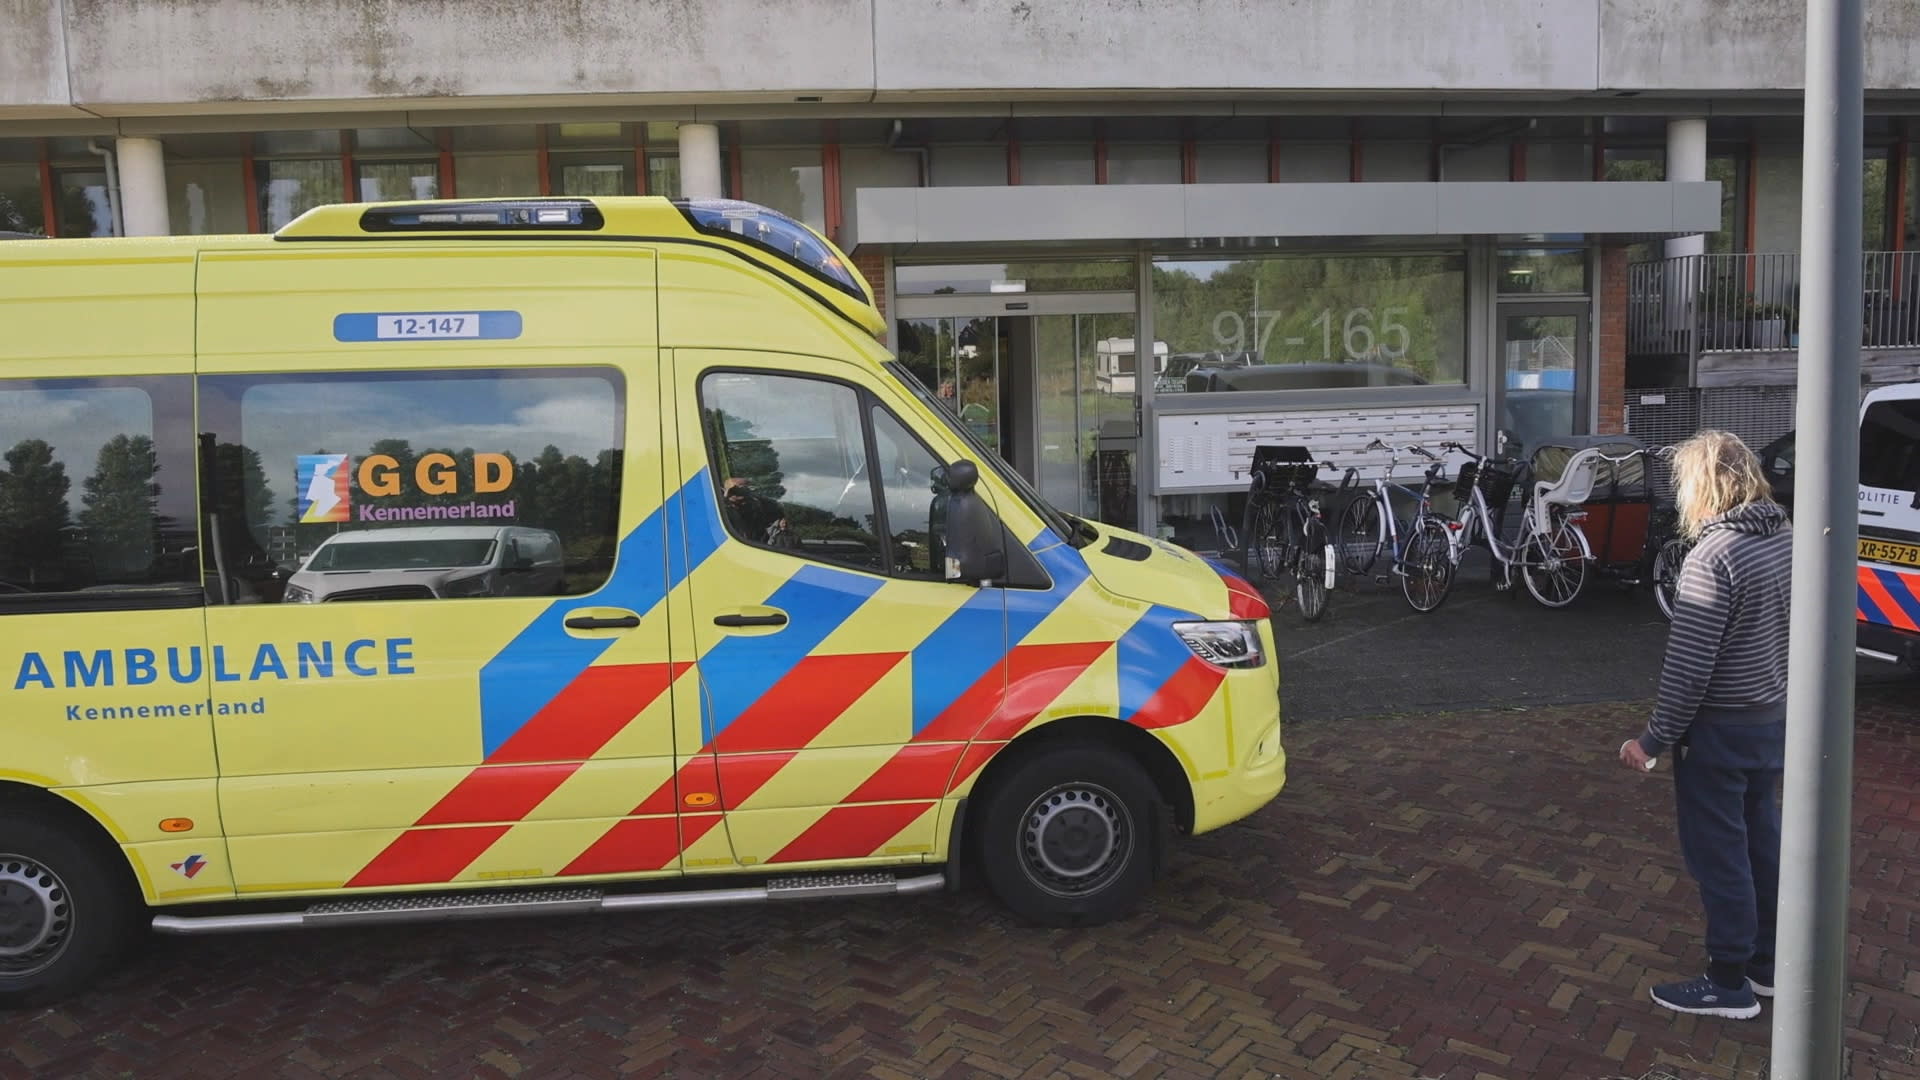 Vrouw doodgestoken in Haarlemse woning, verdachte aangehouden